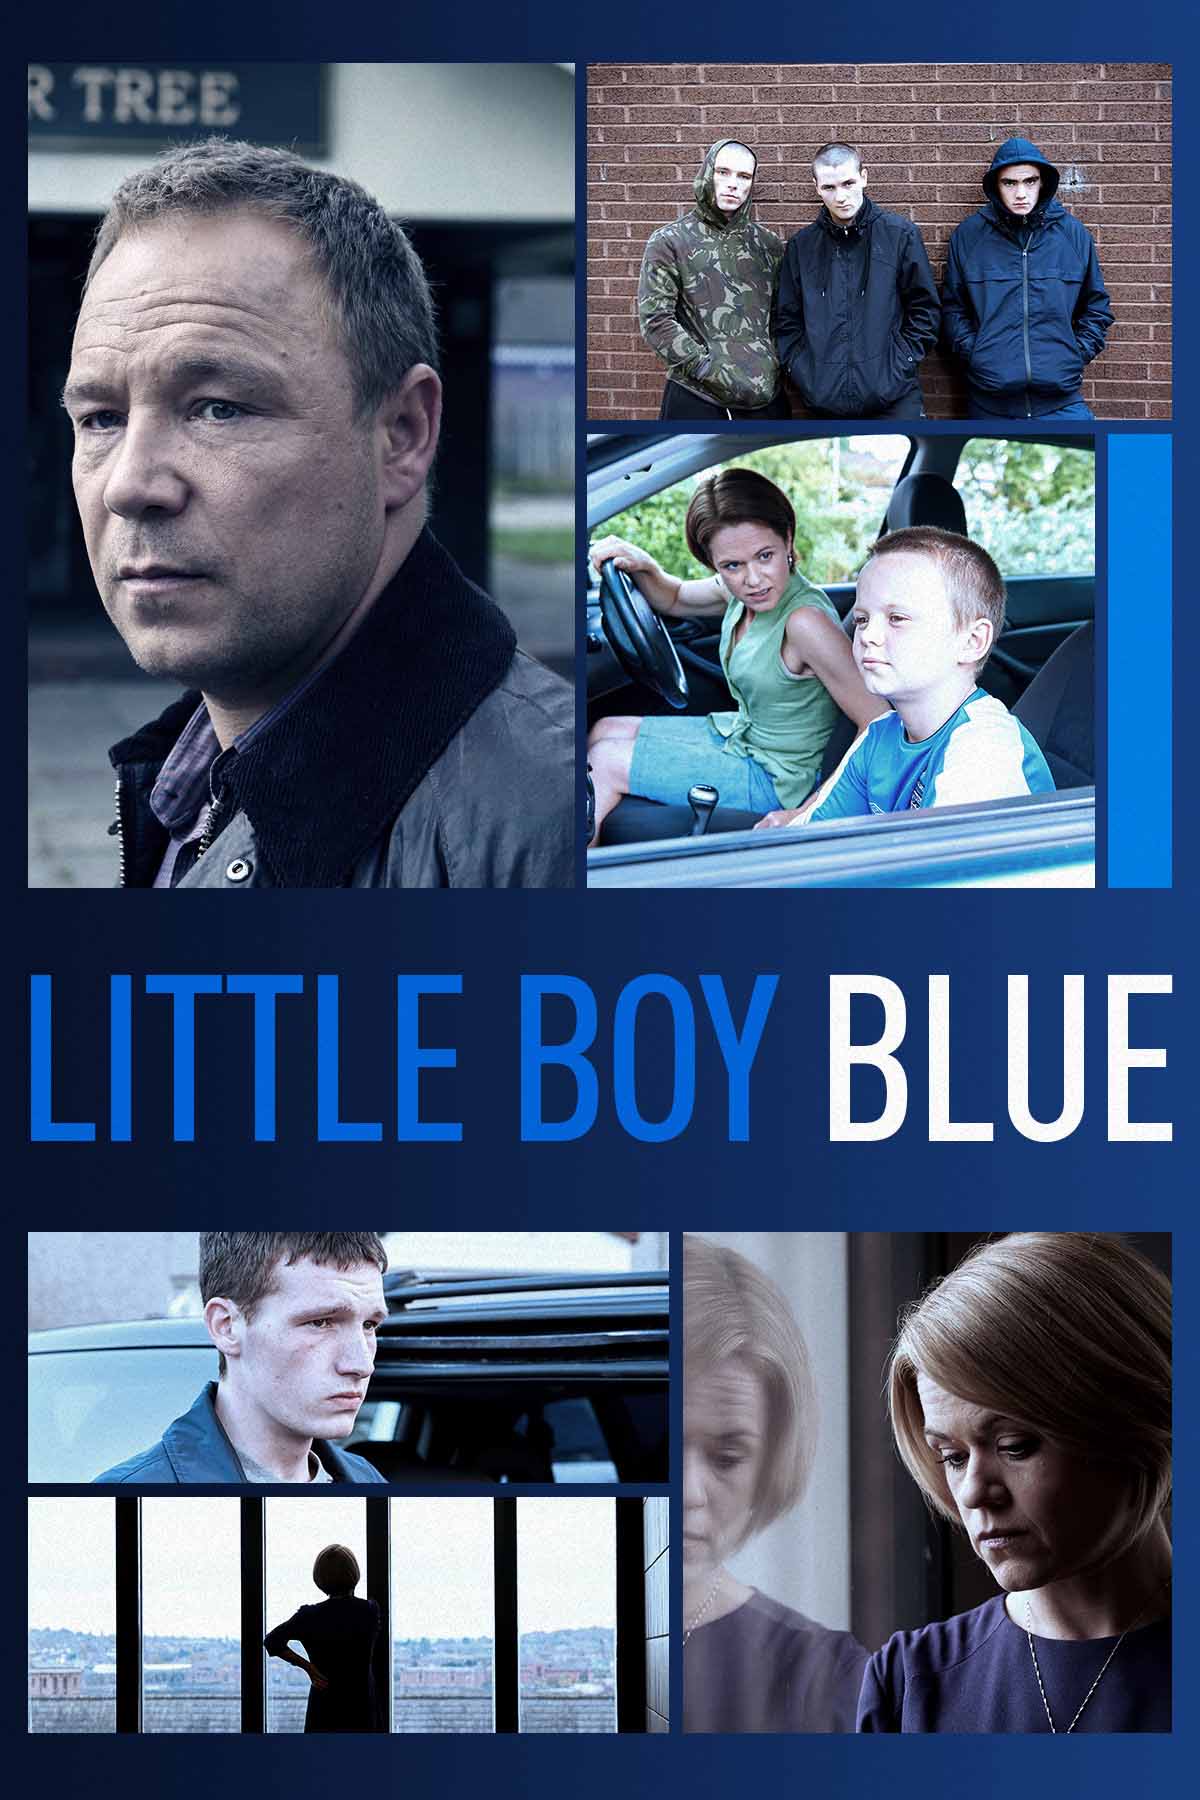 ‘Little Boy Blue’ podrá verse el mes que viene en Filmin